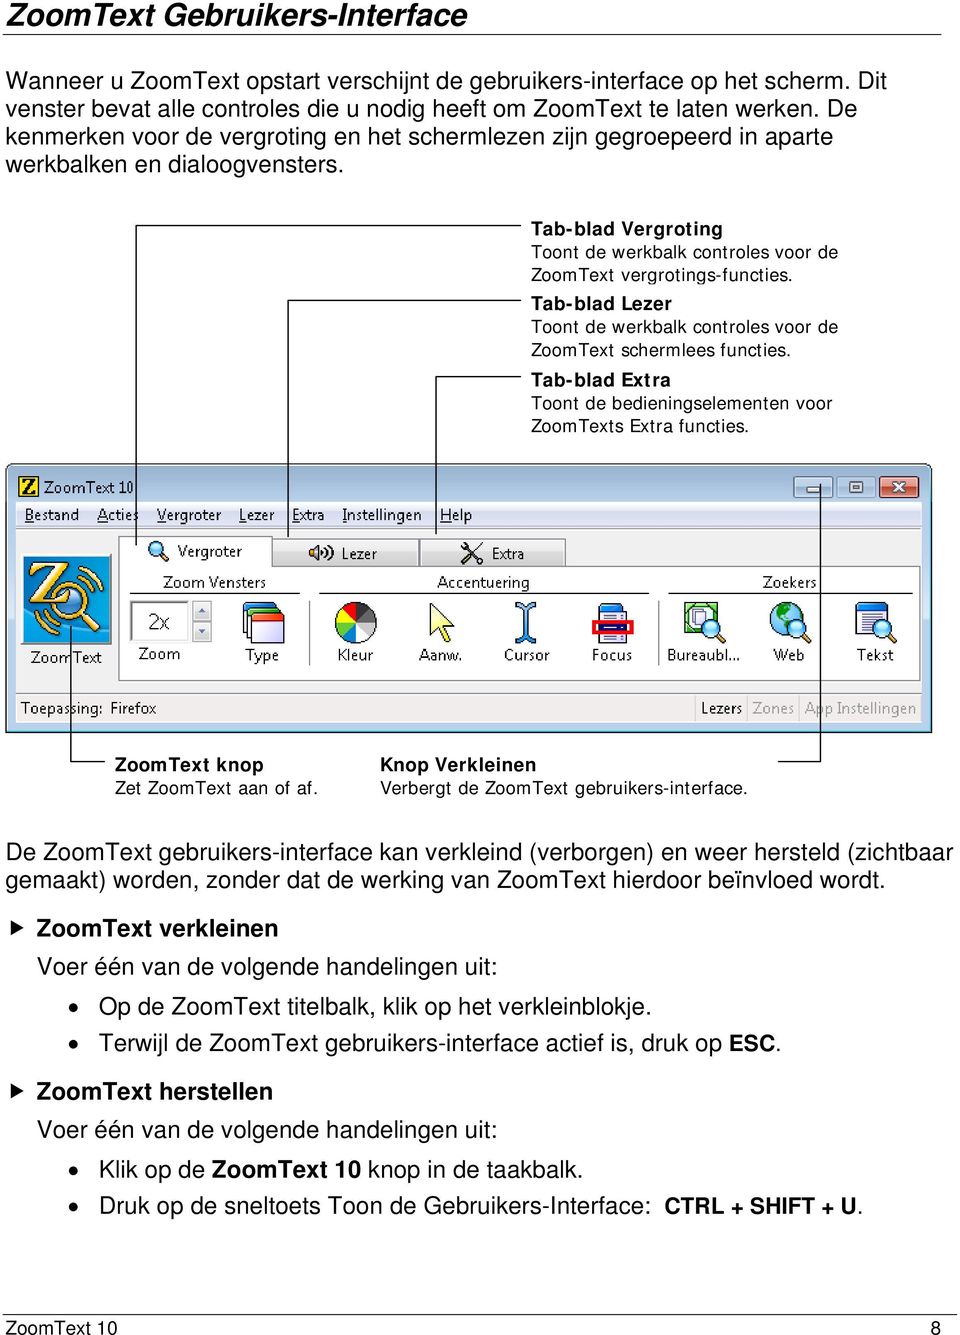 Tab-blad Lezer Toont de werkbalk controles voor de ZoomText schermlees functies. Tab-blad Extra Toont de bedieningselementen voor ZoomTexts Extra functies. ZoomText knop Zet ZoomText aan of af.